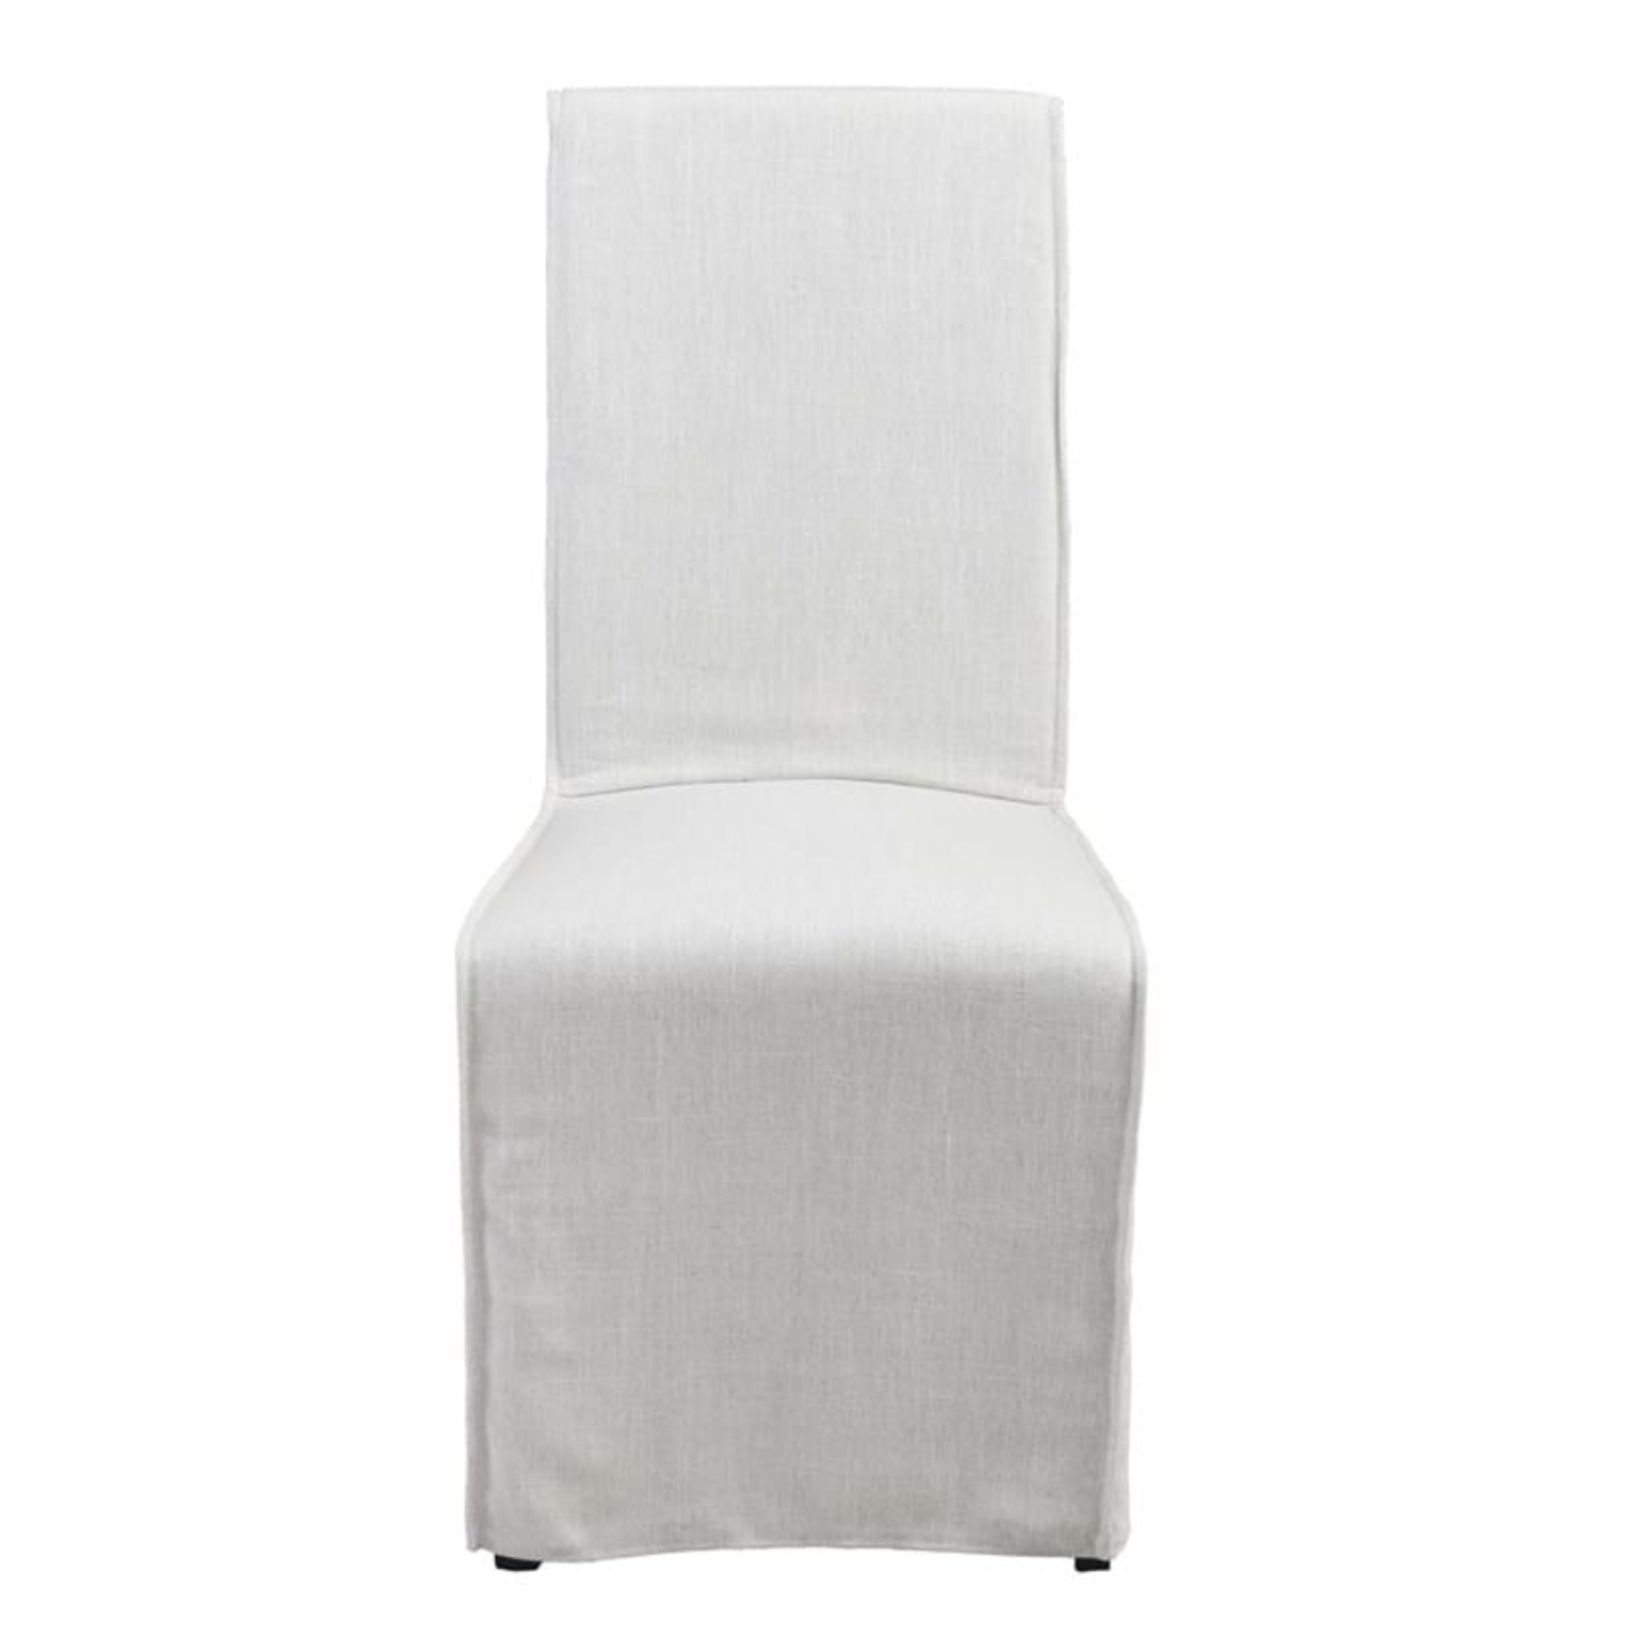 Outside The Box 19x24x43 Jordan Upholstered White Linen Blend Dining Chair